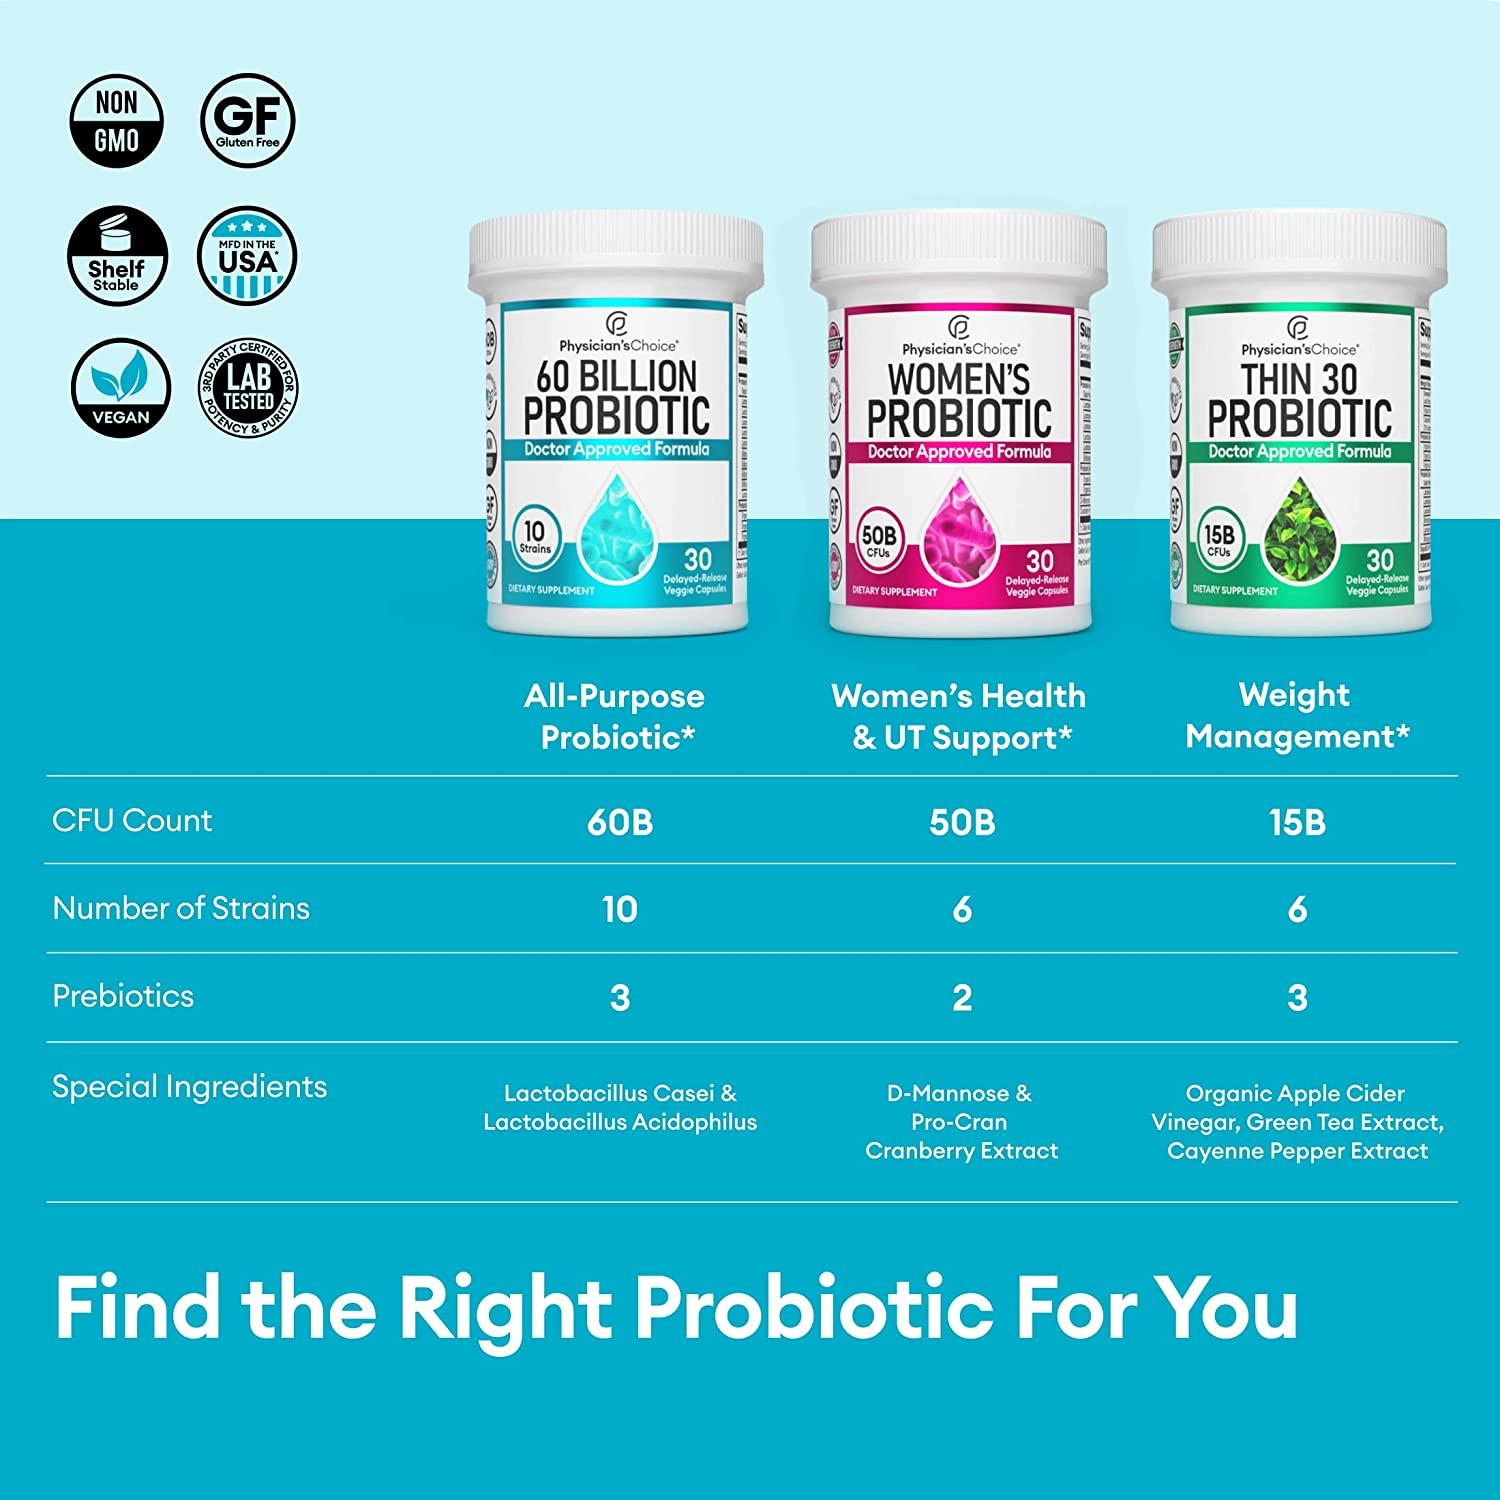 Probiotic 60 Billion (30 veggie capsules)